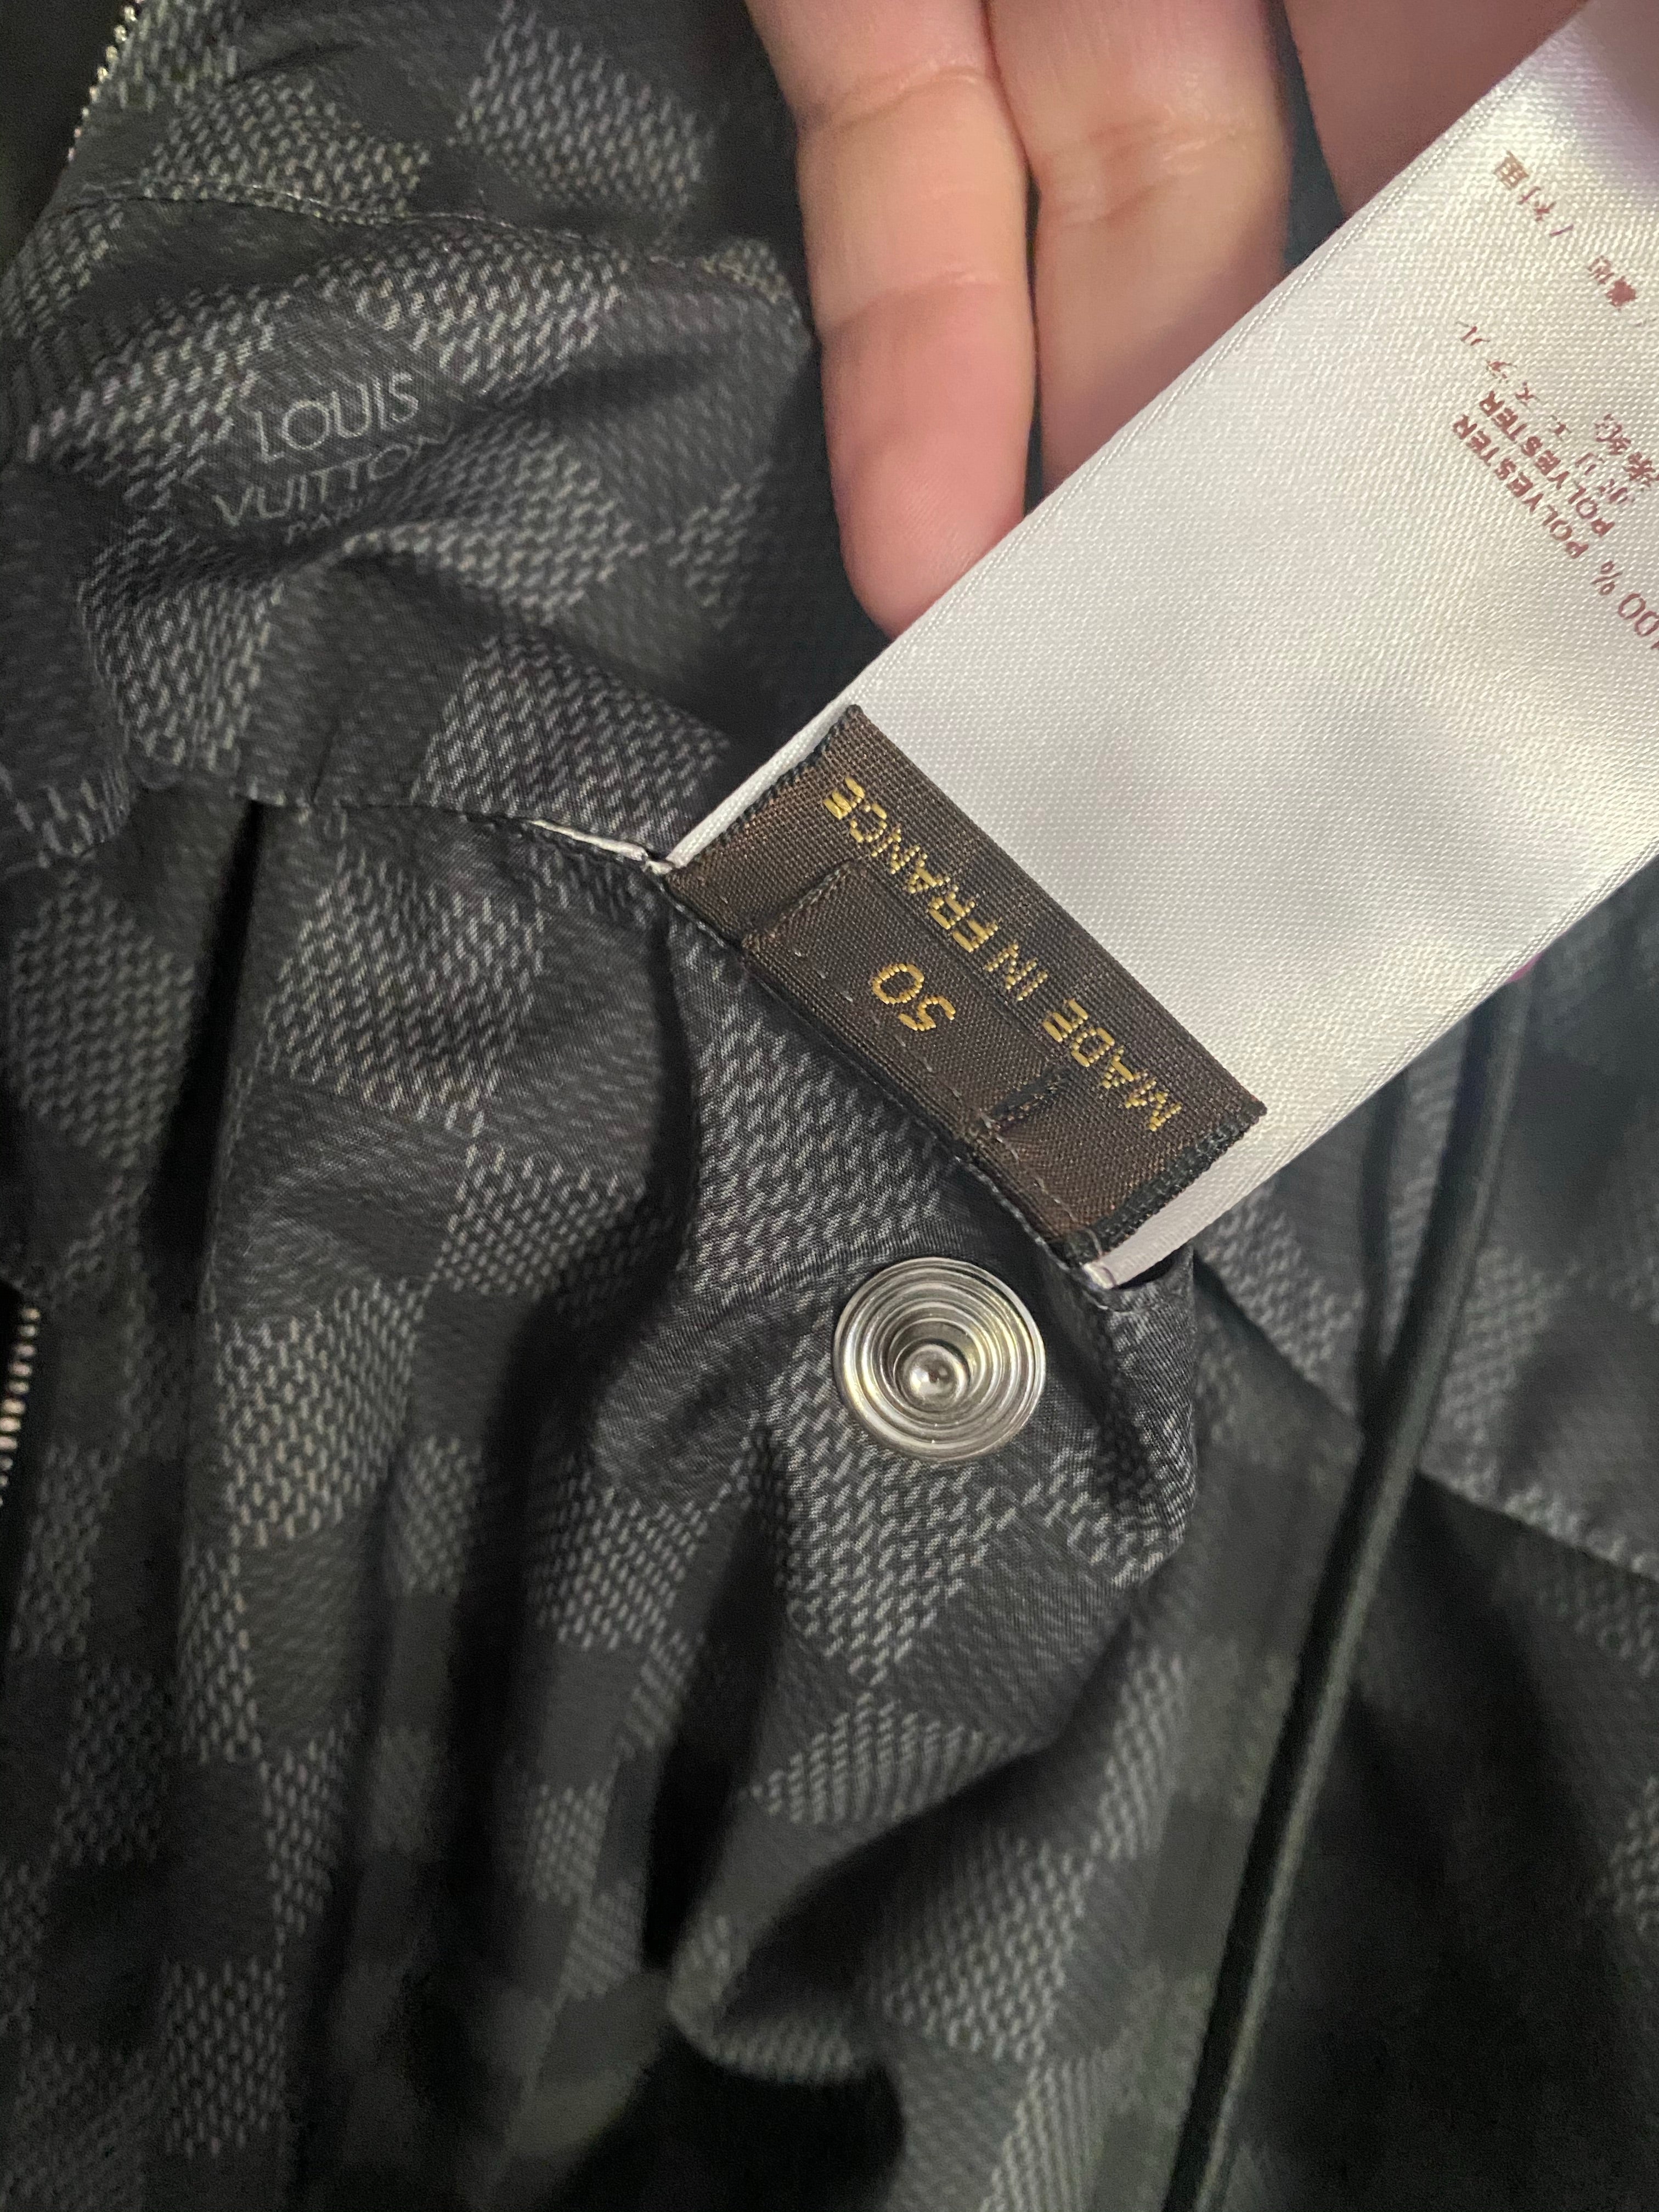 Louis Vuitton Uniforms Zippered Vest/Blouse and black dress size